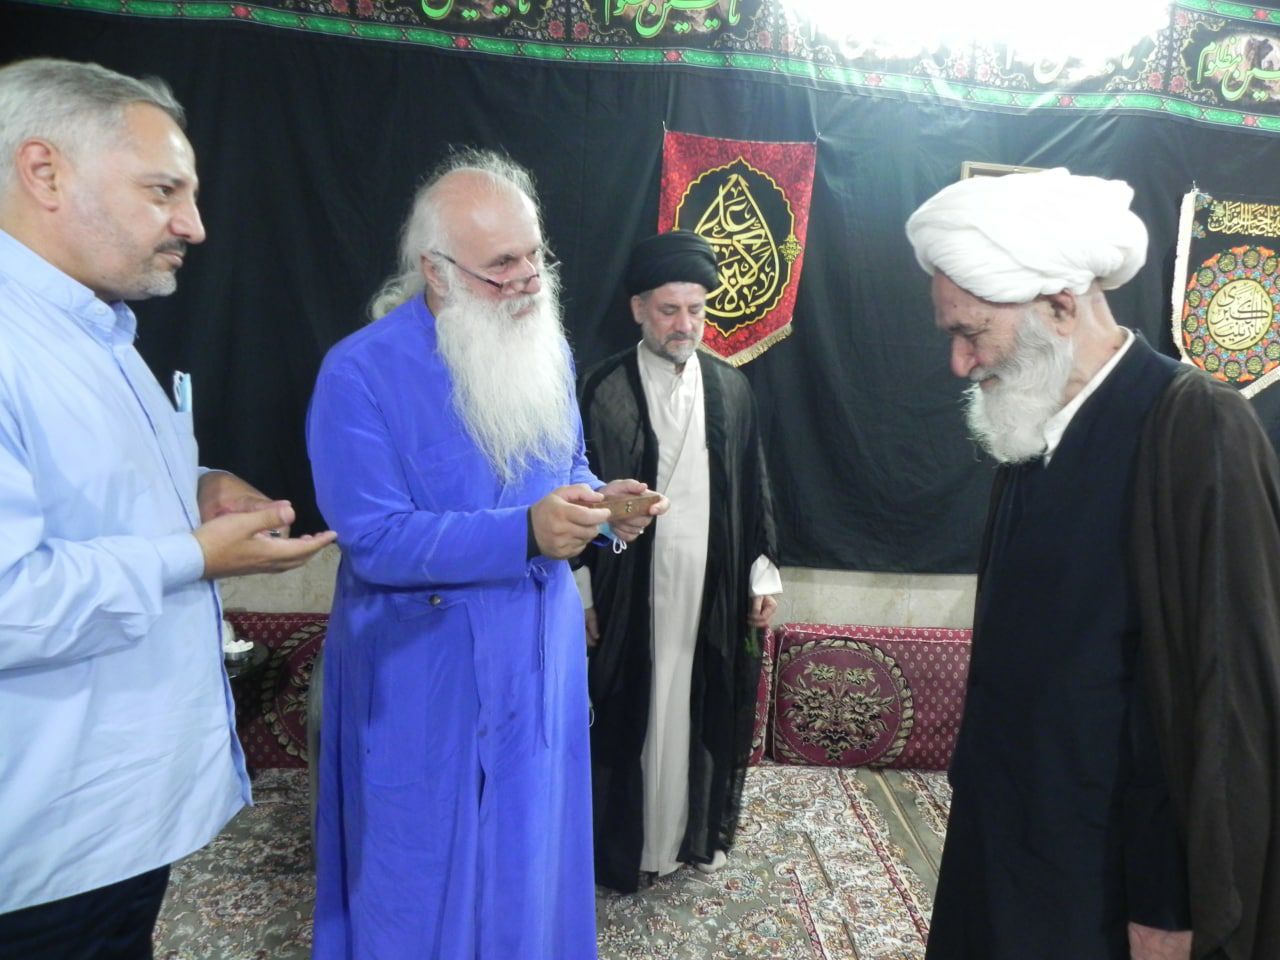 اسقف سونگولاشویلی، اسقف اعظم گرجستان به دیدار آیت الله العظمی دوزدوزانی تبریزی رفت